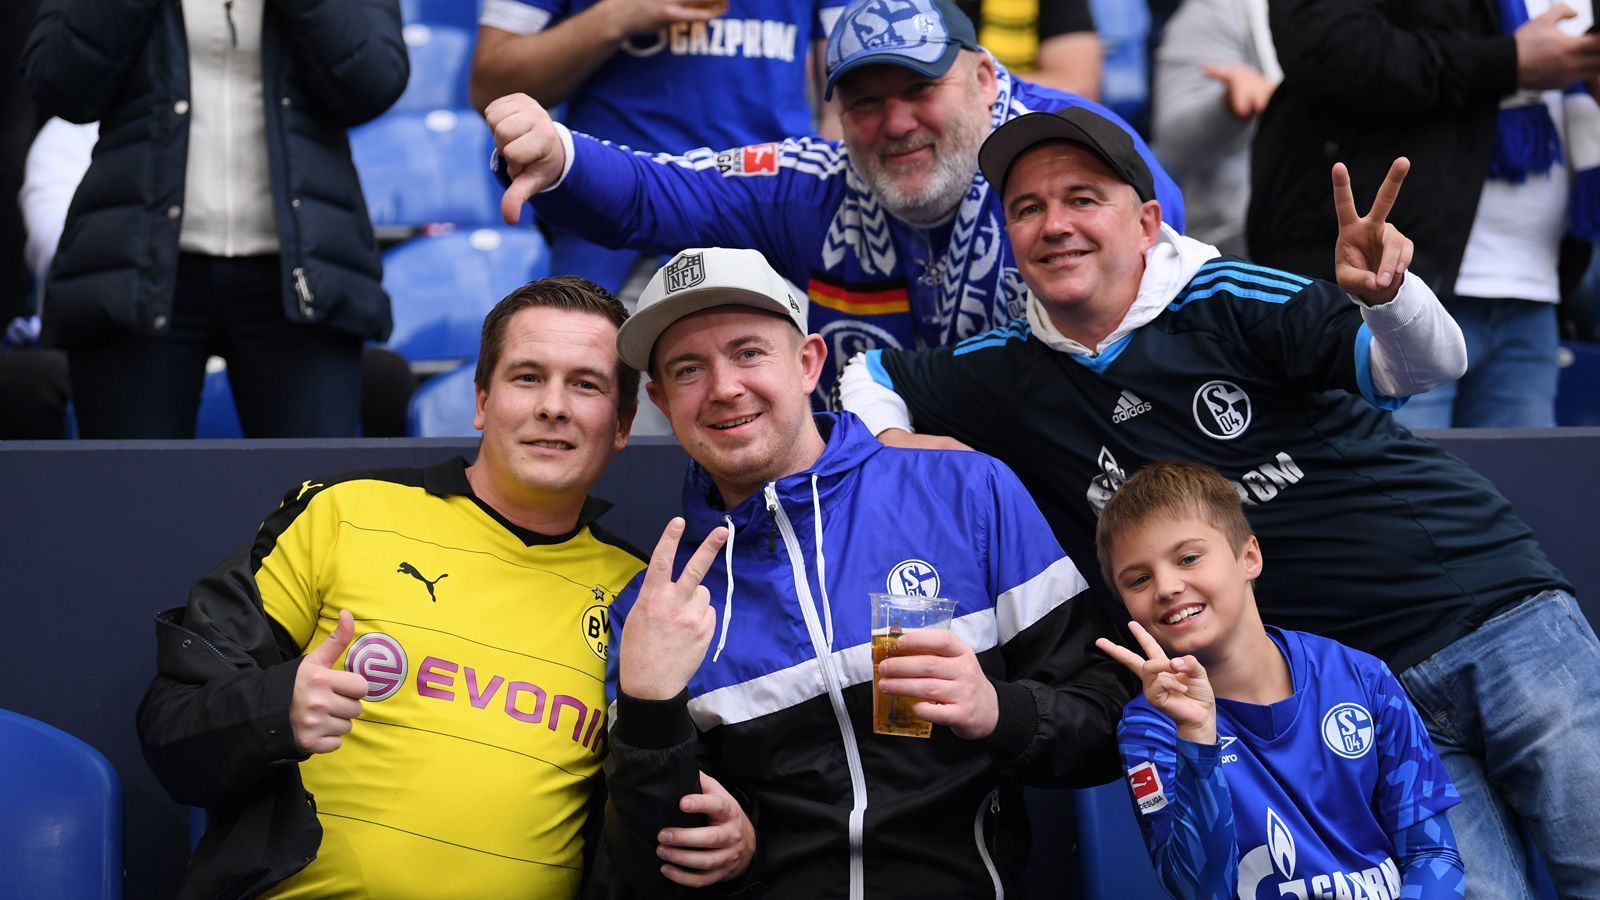 
                <strong>Bundesliga: Impressionen vom Revierderby 2019/20</strong><br>
                So geht Revierderby auch! Neben den gegenseitigen Provokationen der Ultras beider Fanlager, gab es natürlich auch freundschaftliche Gesten unter den Anhängern der beiden Revier-Großklubs. 
              